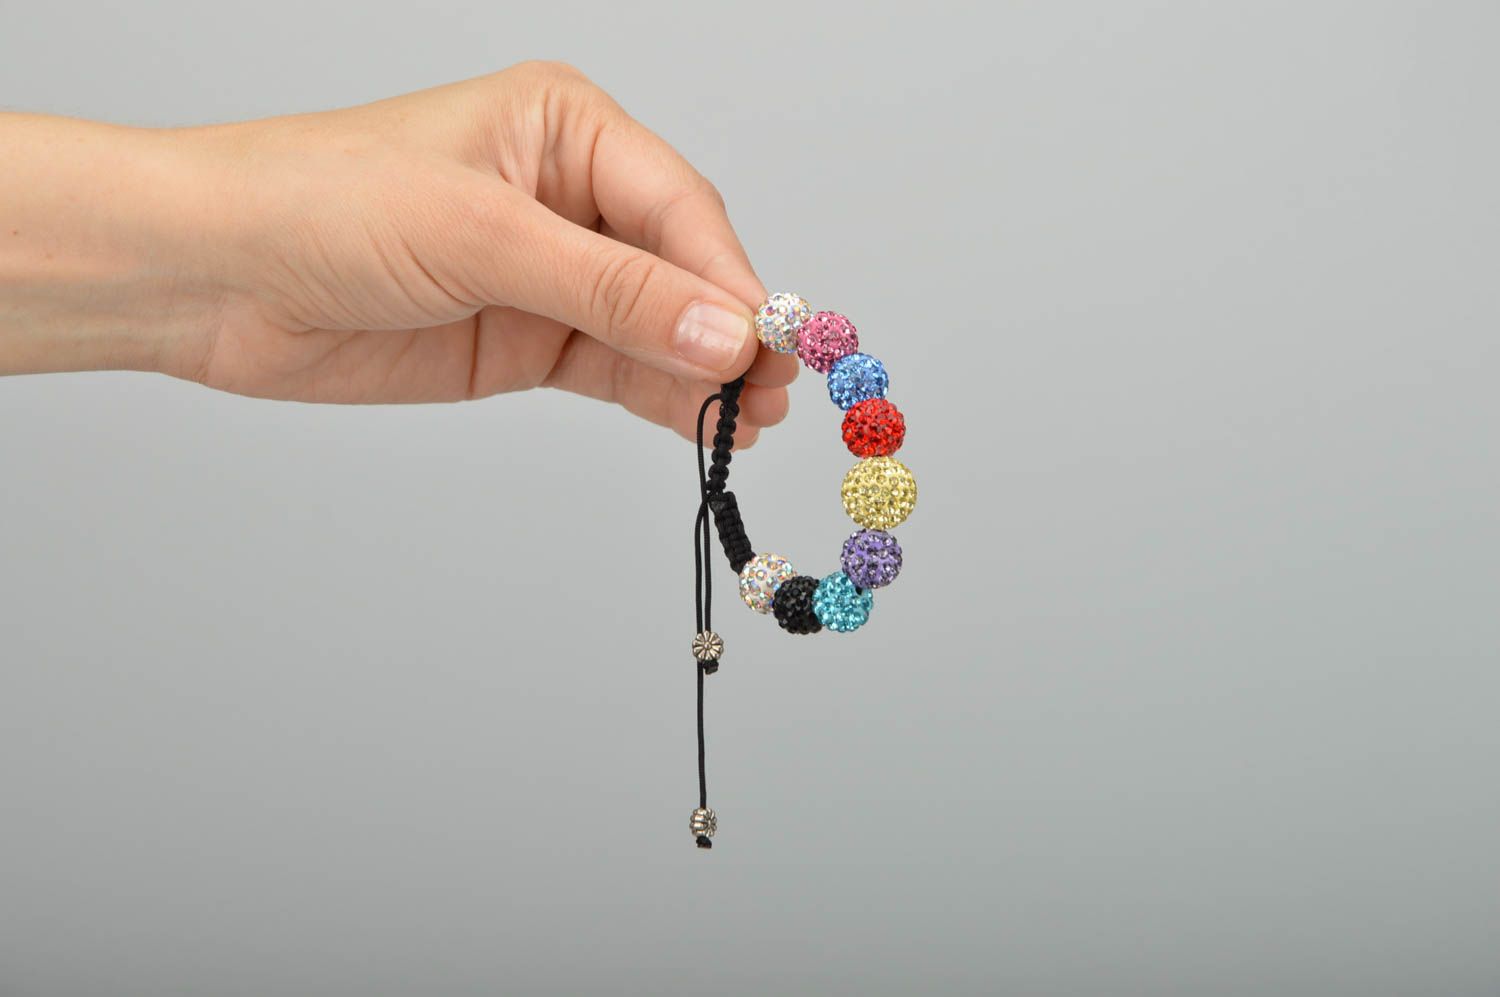 Stylish homemade braided bracelet textile wrist bracelet with beads gift ideas photo 2